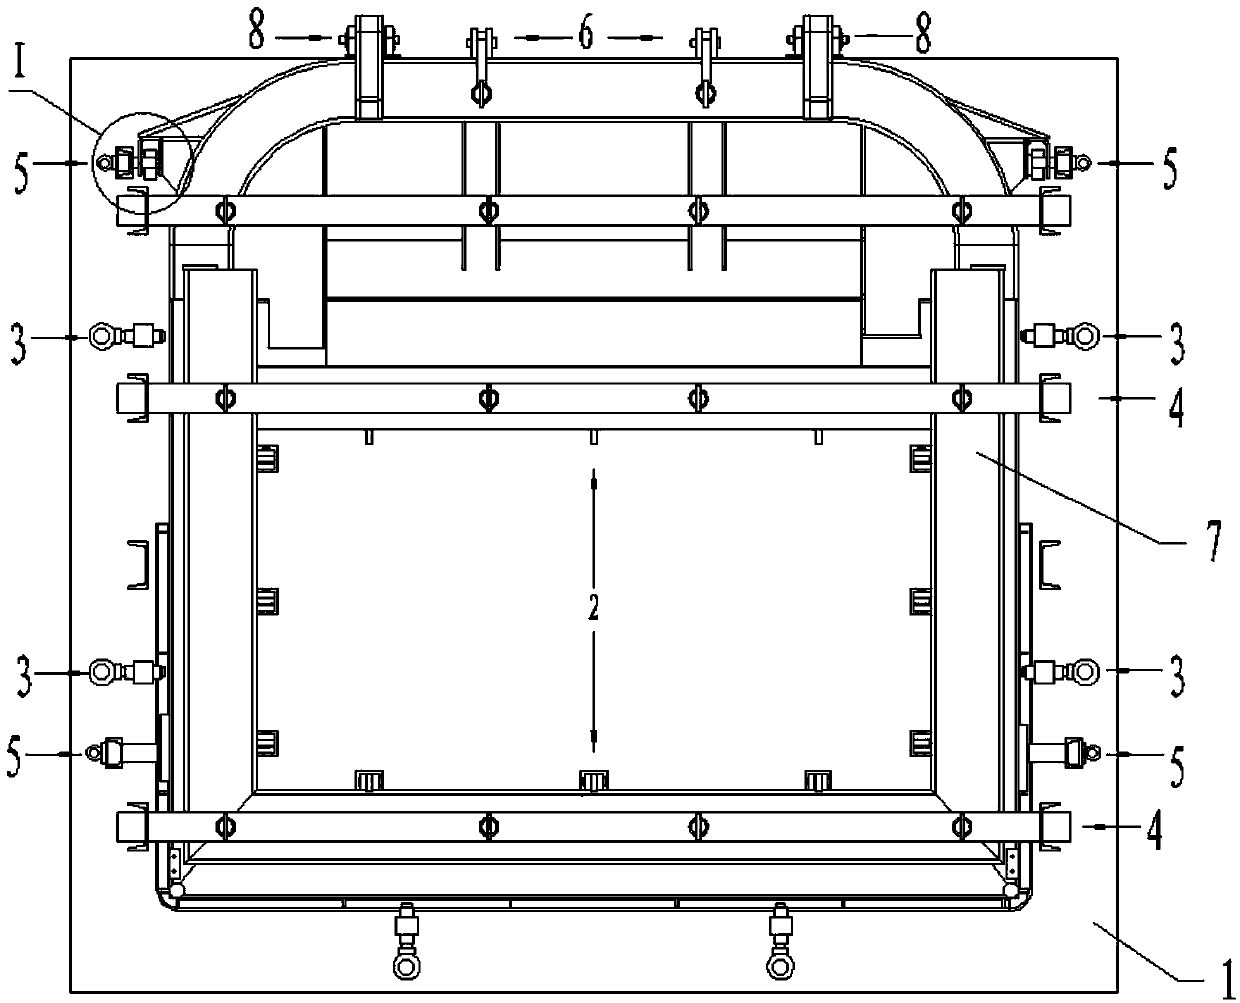 Rear compartment door tailor welding tool